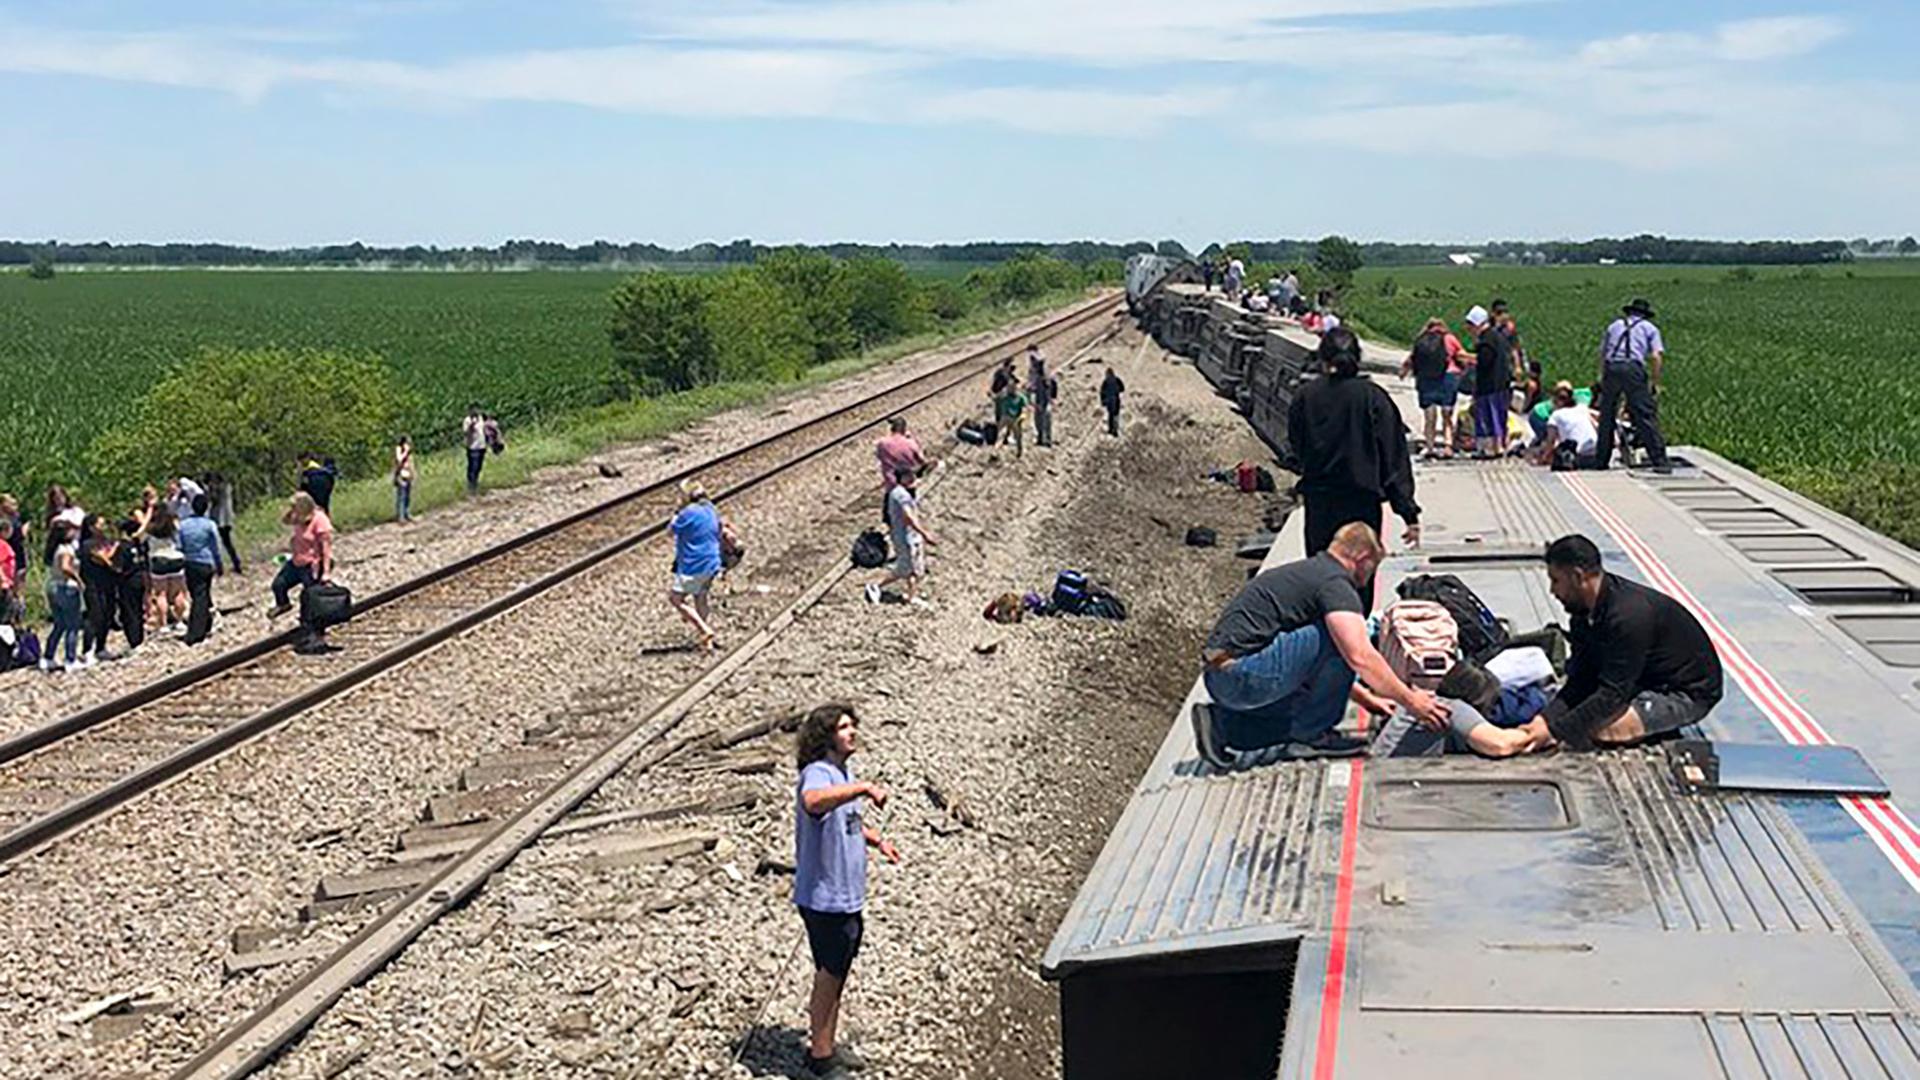 Menschen helfen sich gegenseitig aus dem Wagon des entgleisten Personenzuges in Missouri in den USA